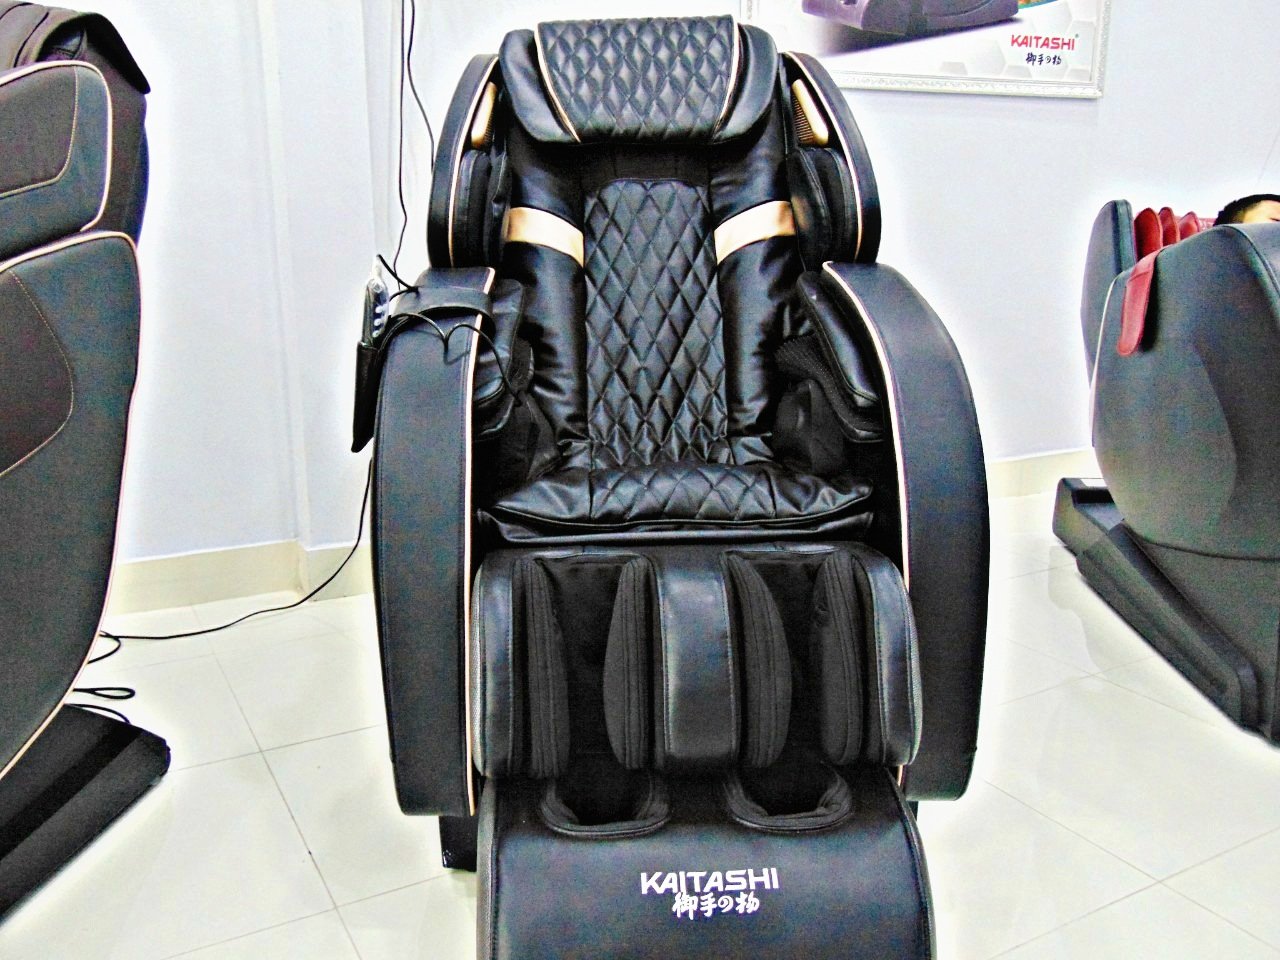 ghế massage kaitashi KS-650 plus